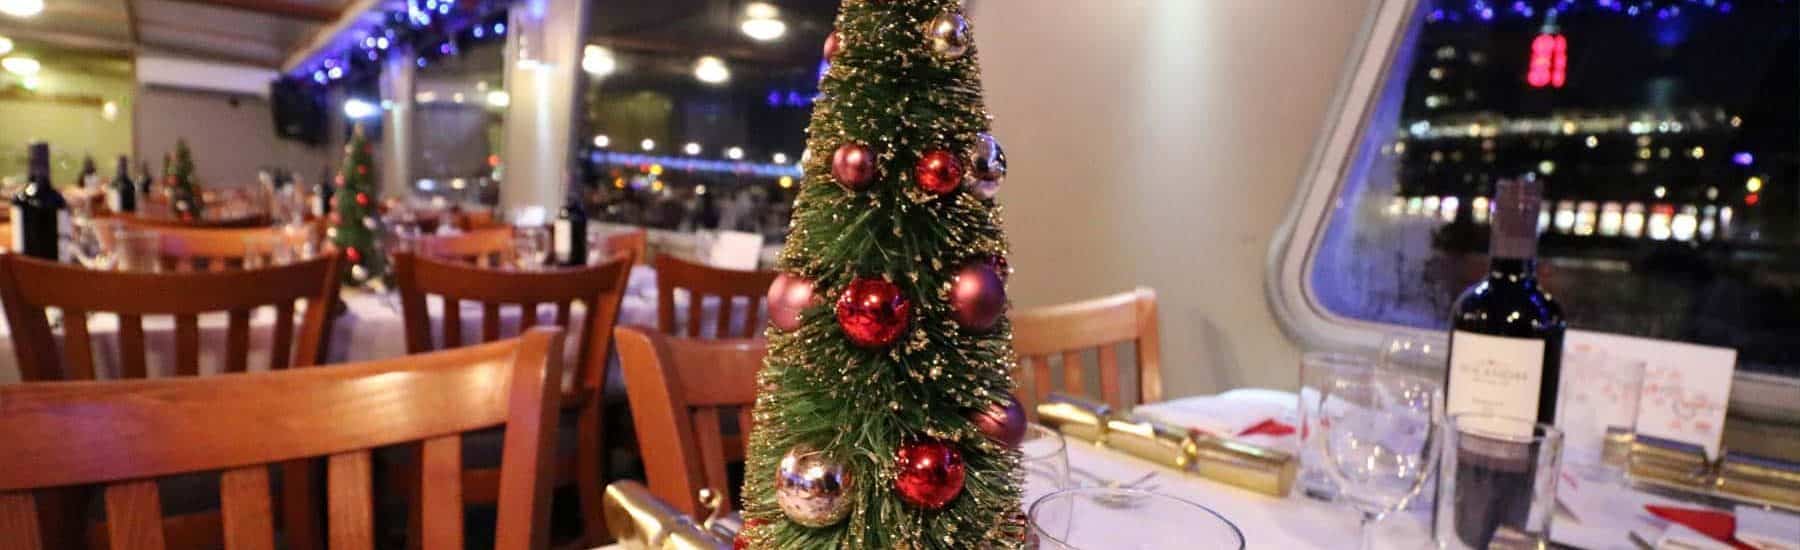 Fiestas de Navidad en el Támesis, charters y cruceros con cena